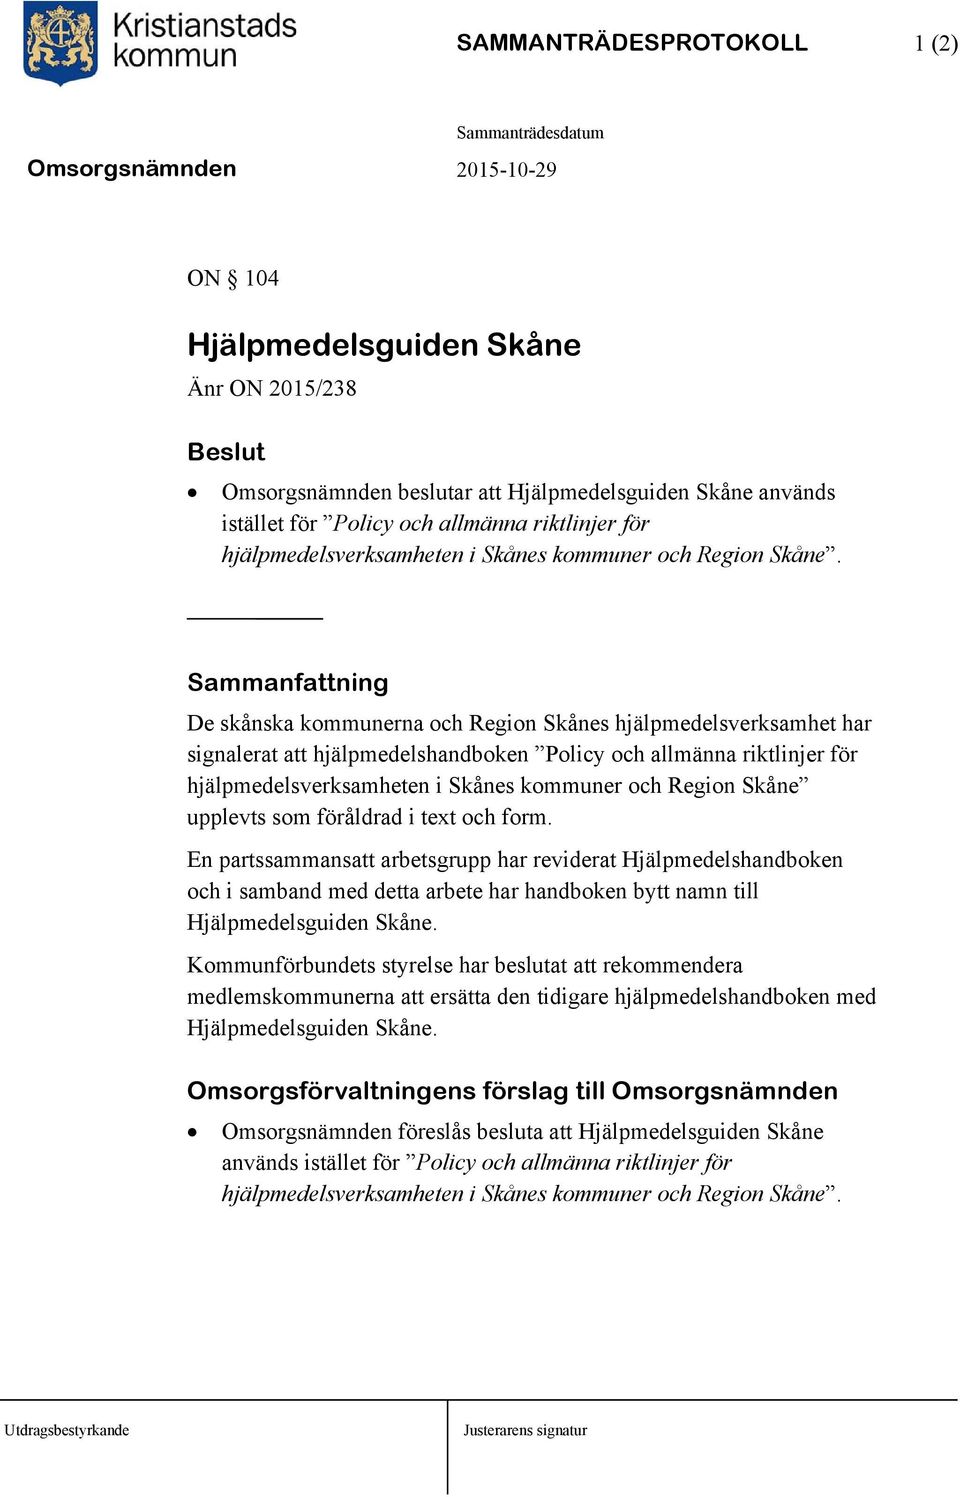 De skånska kommunerna och Region Skånes hjälpmedelsverksamhet har signalerat att hjälpmedelshandboken Policy och allmänna riktlinjer för hjälpmedelsverksamheten i Skånes kommuner och Region Skåne